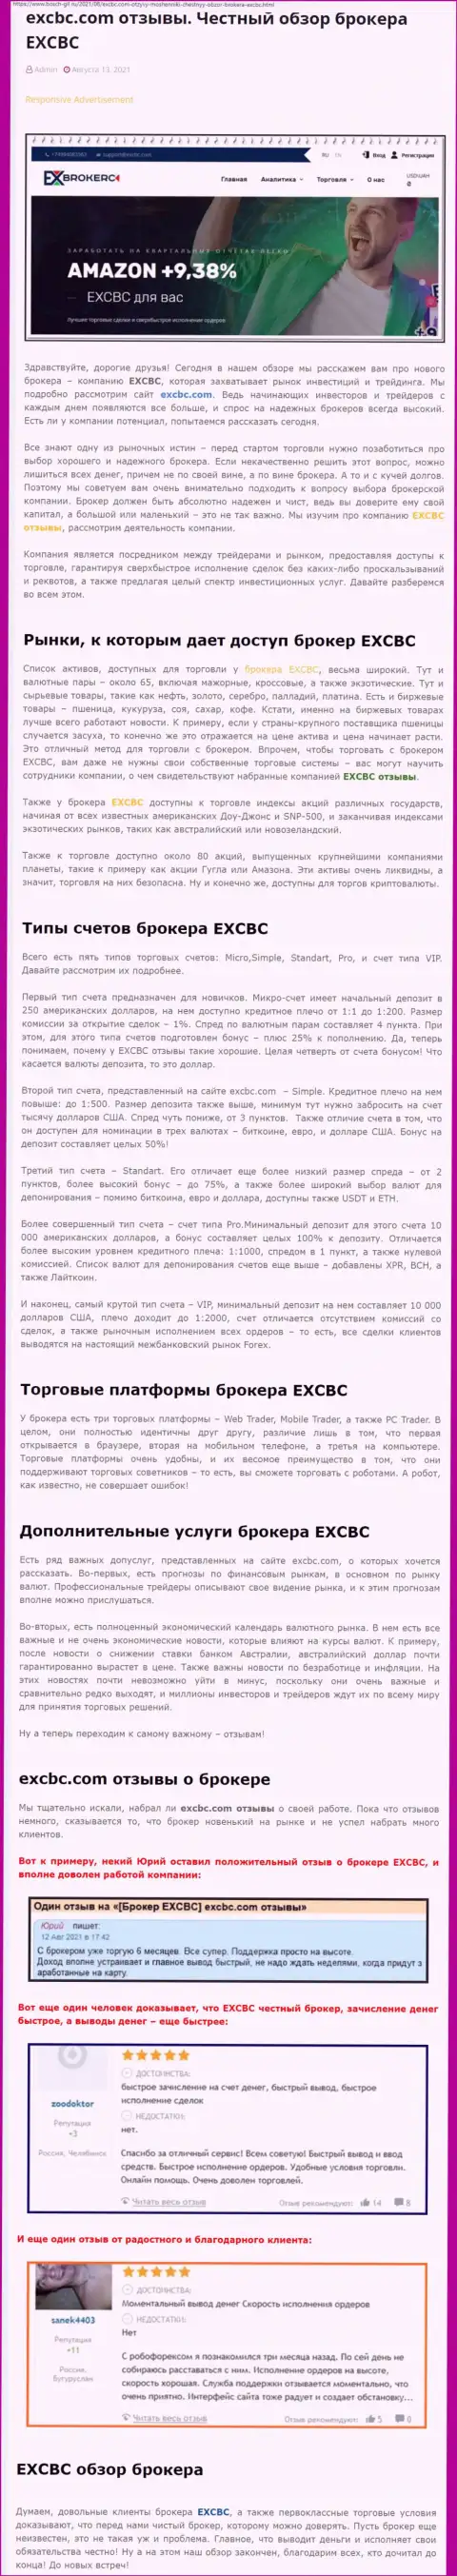 Материал о форекс-брокерской компании ЕХ Брокерс на онлайн-сервисе bosch gll ru